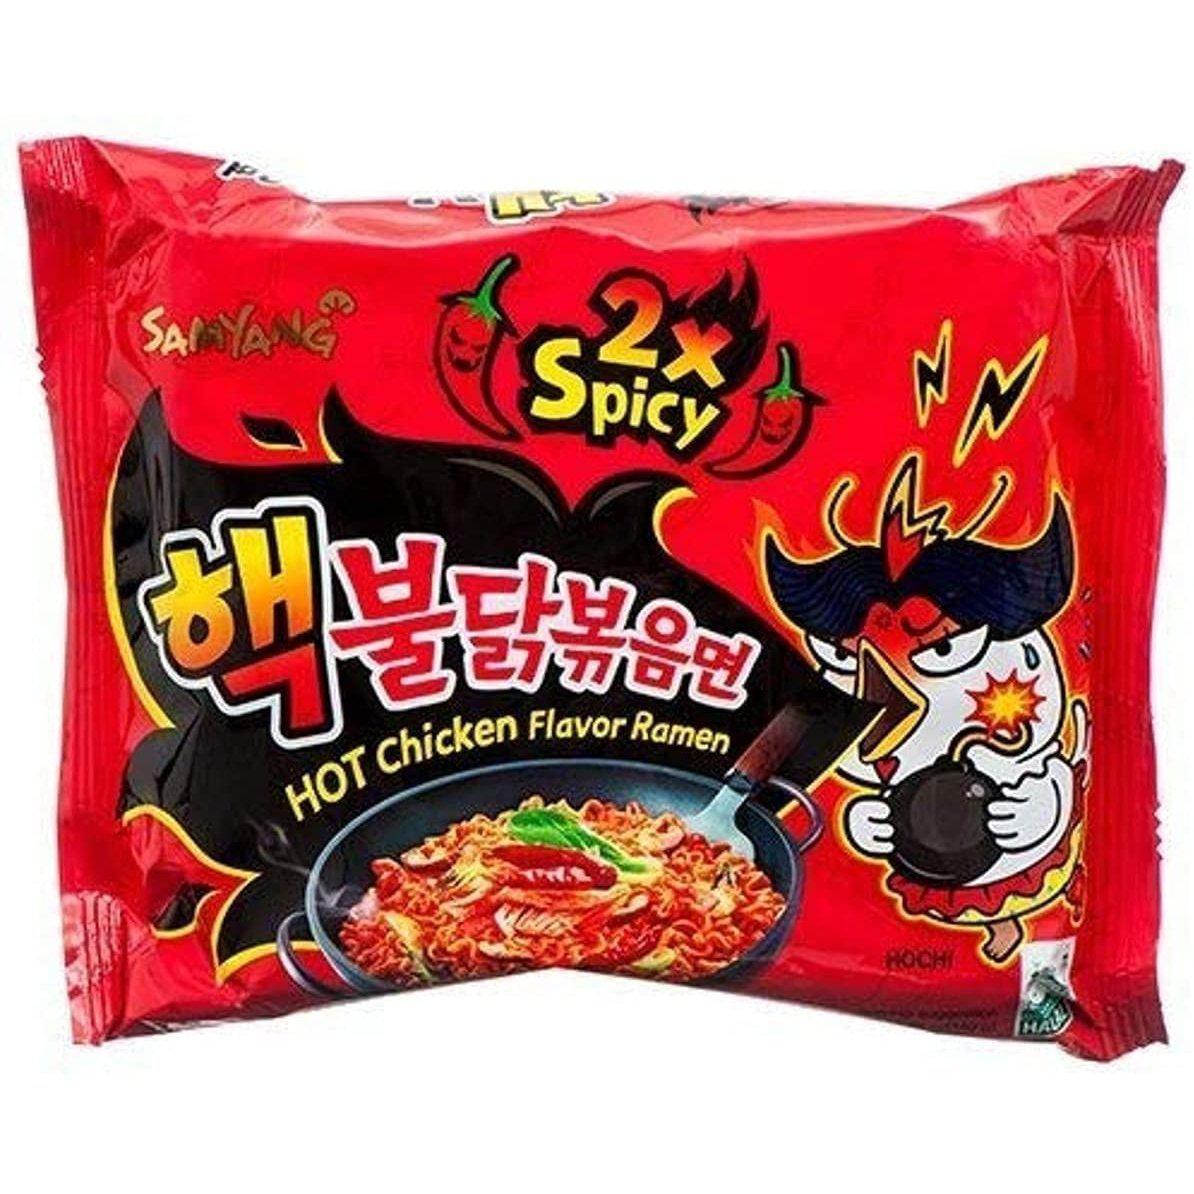 Samyang, Buldak 2X Spicy, Hot Chicken Flavour Ramen 140G